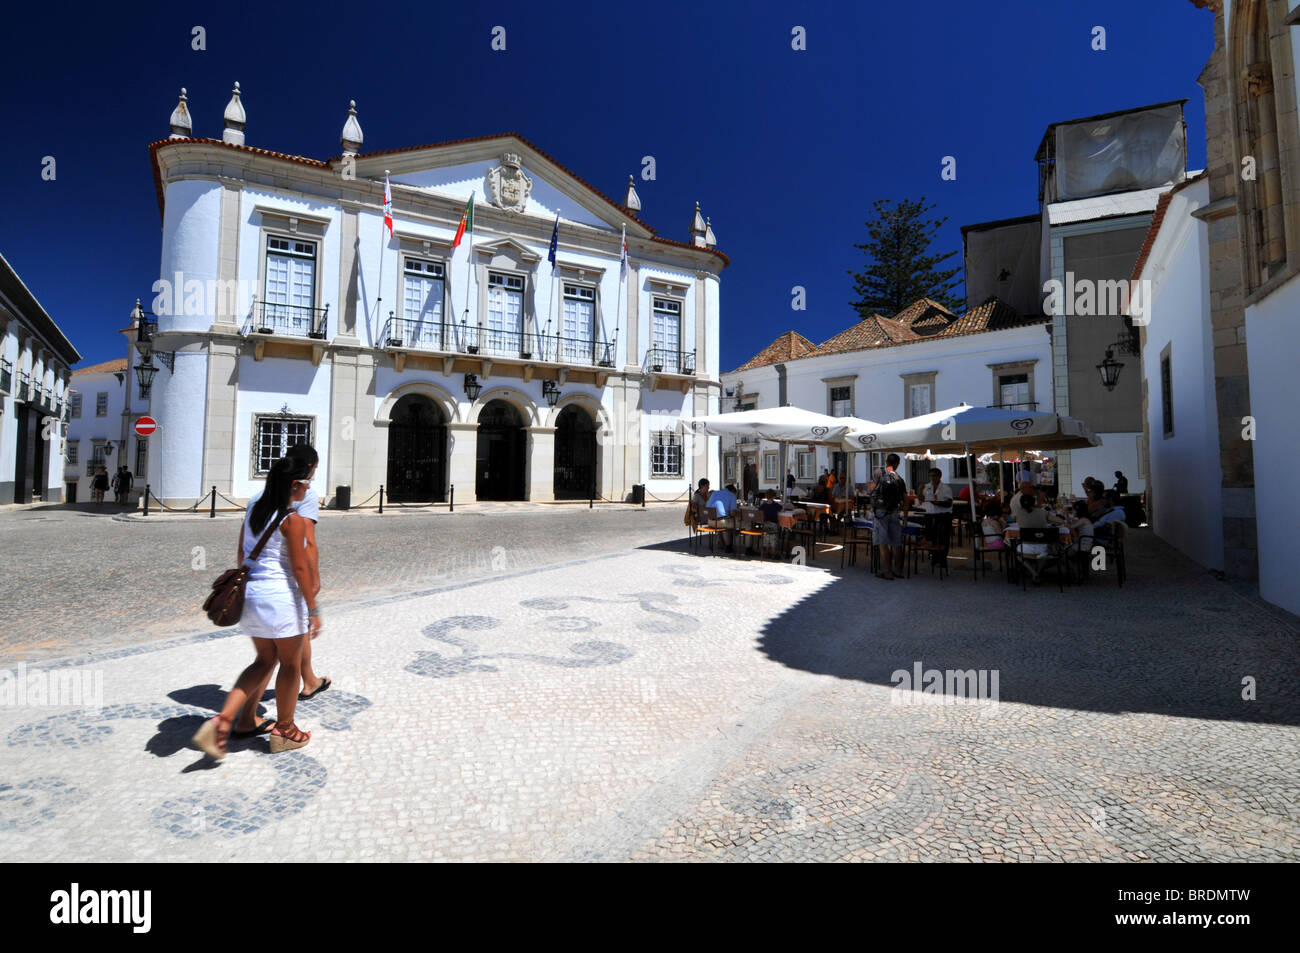 L'Hôtel de ville et cafe, Velha, vieille ville de Faro, Portugal Banque D'Images